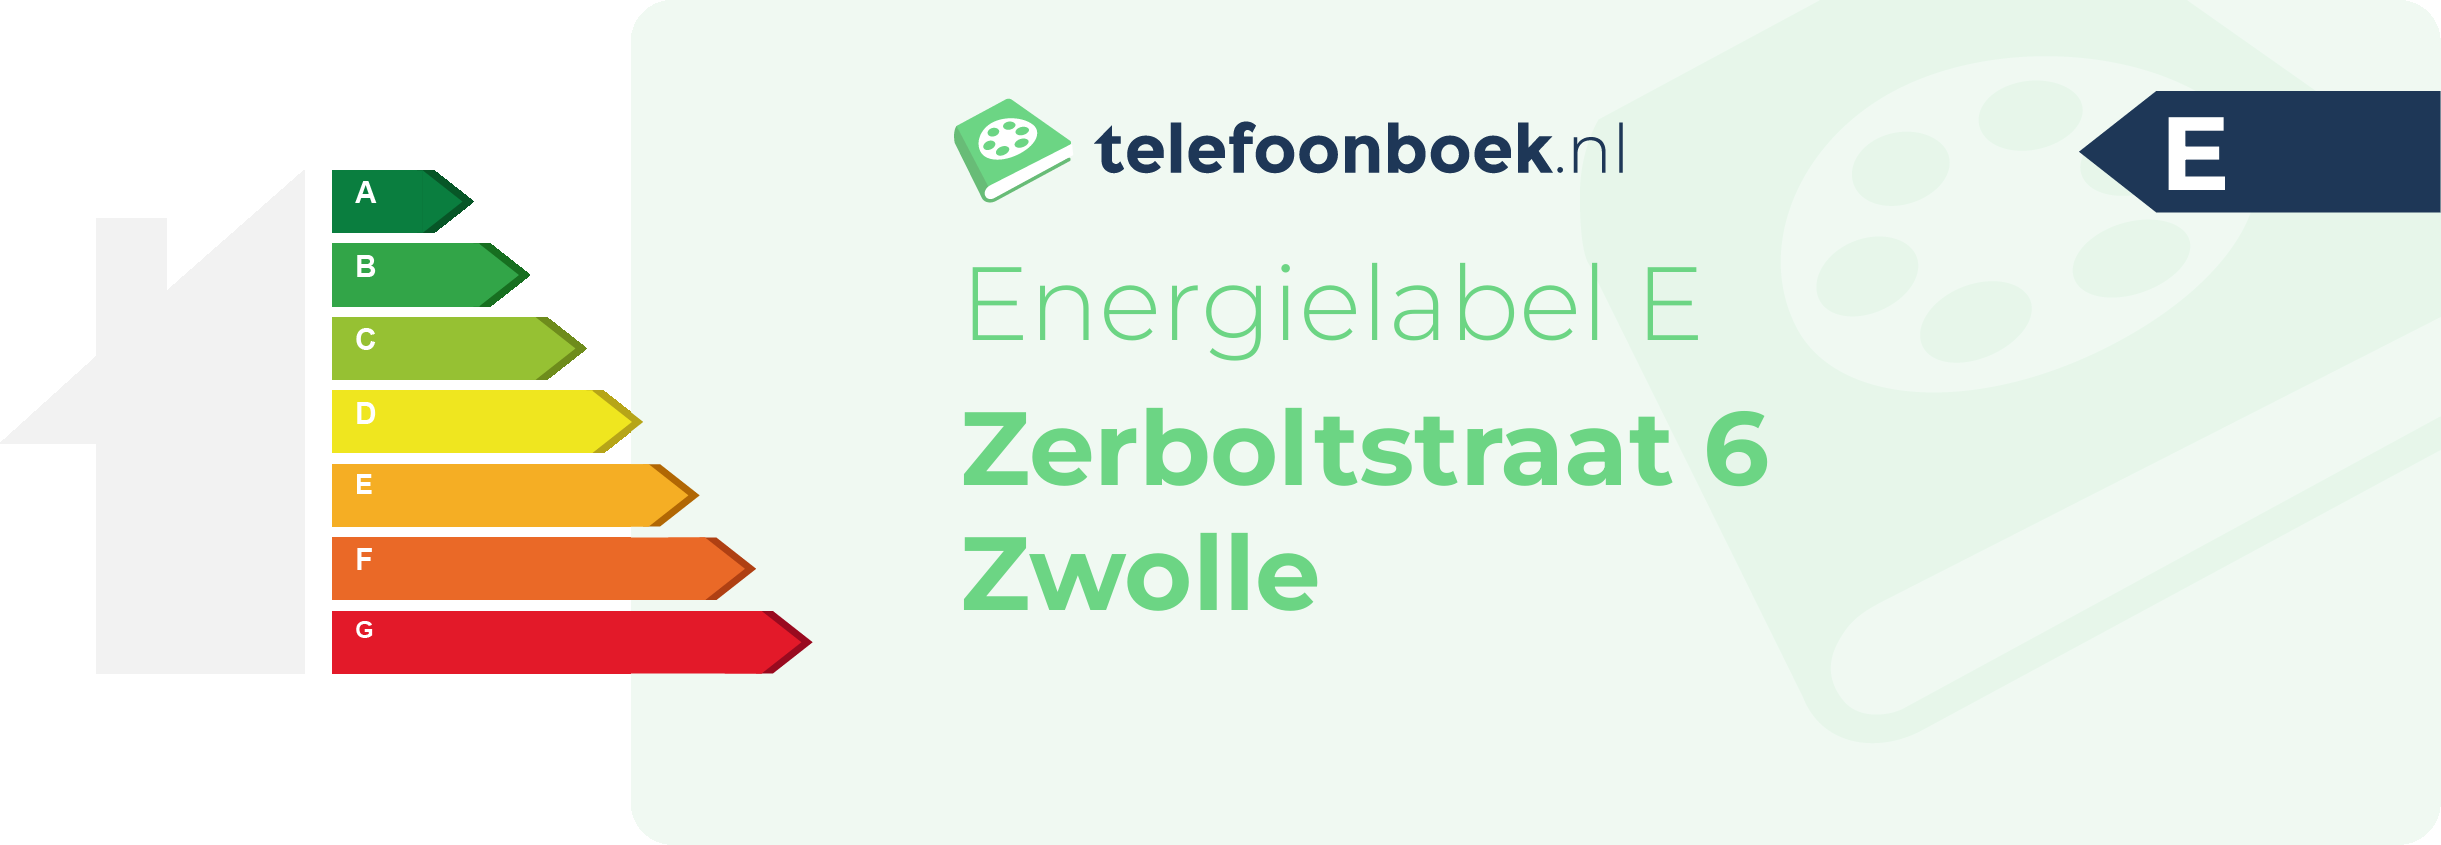 Energielabel Zerboltstraat 6 Zwolle